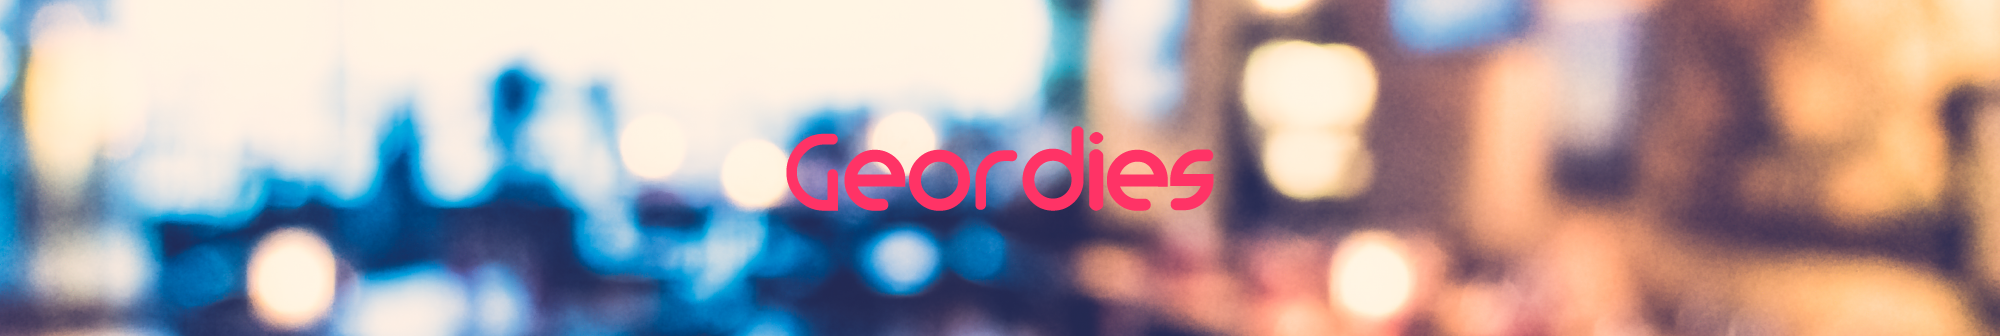 Geordies logo header image